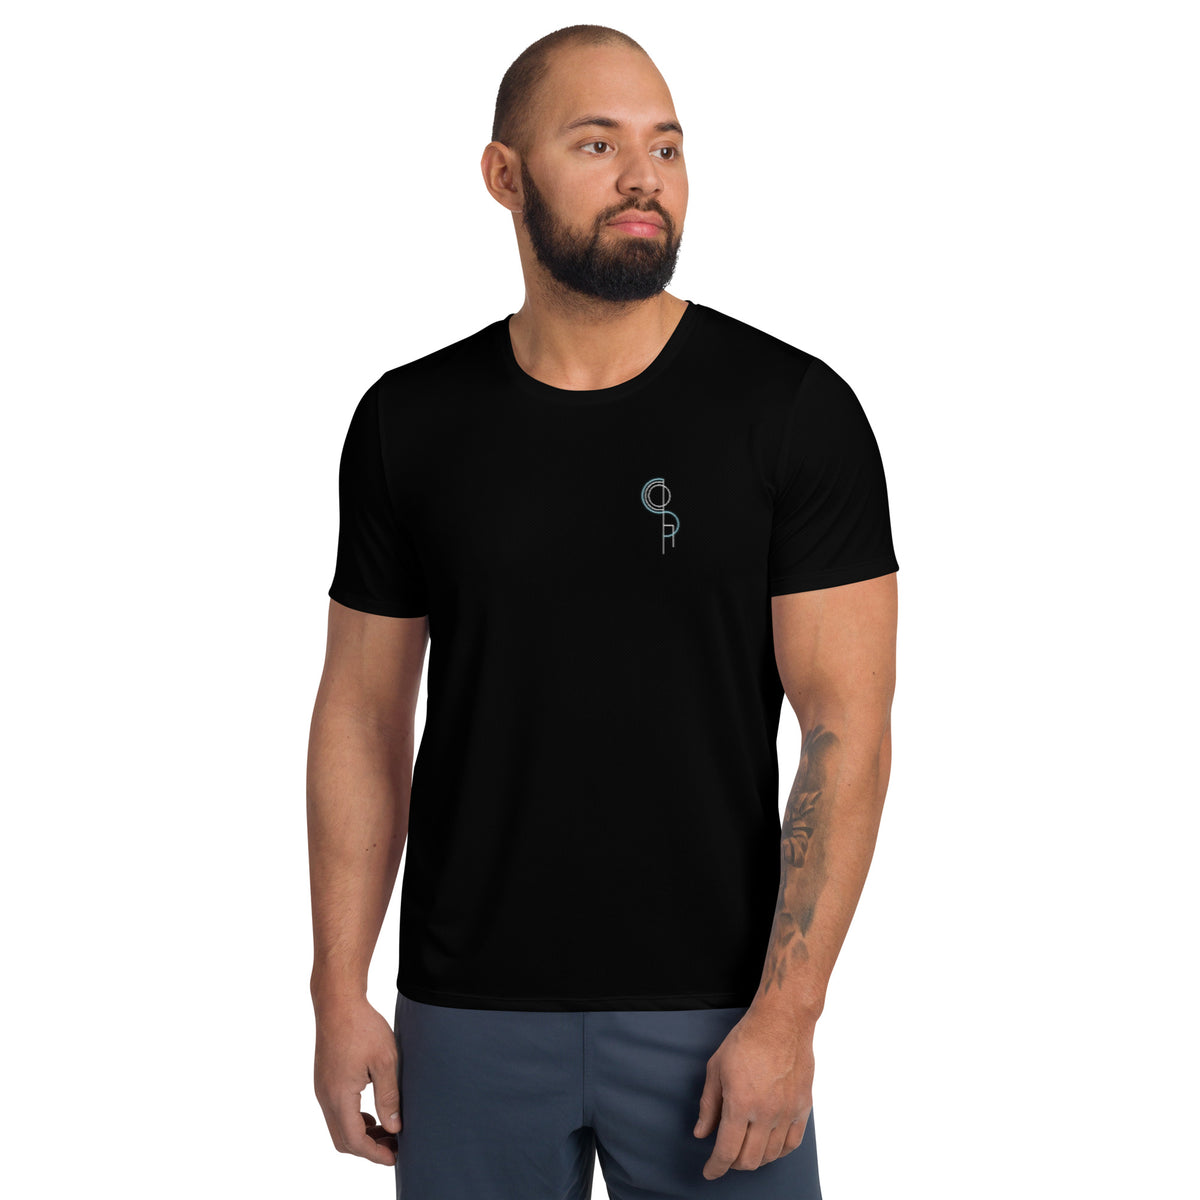 DerSocha - Herren-Sport-T-Shirt mit Druck